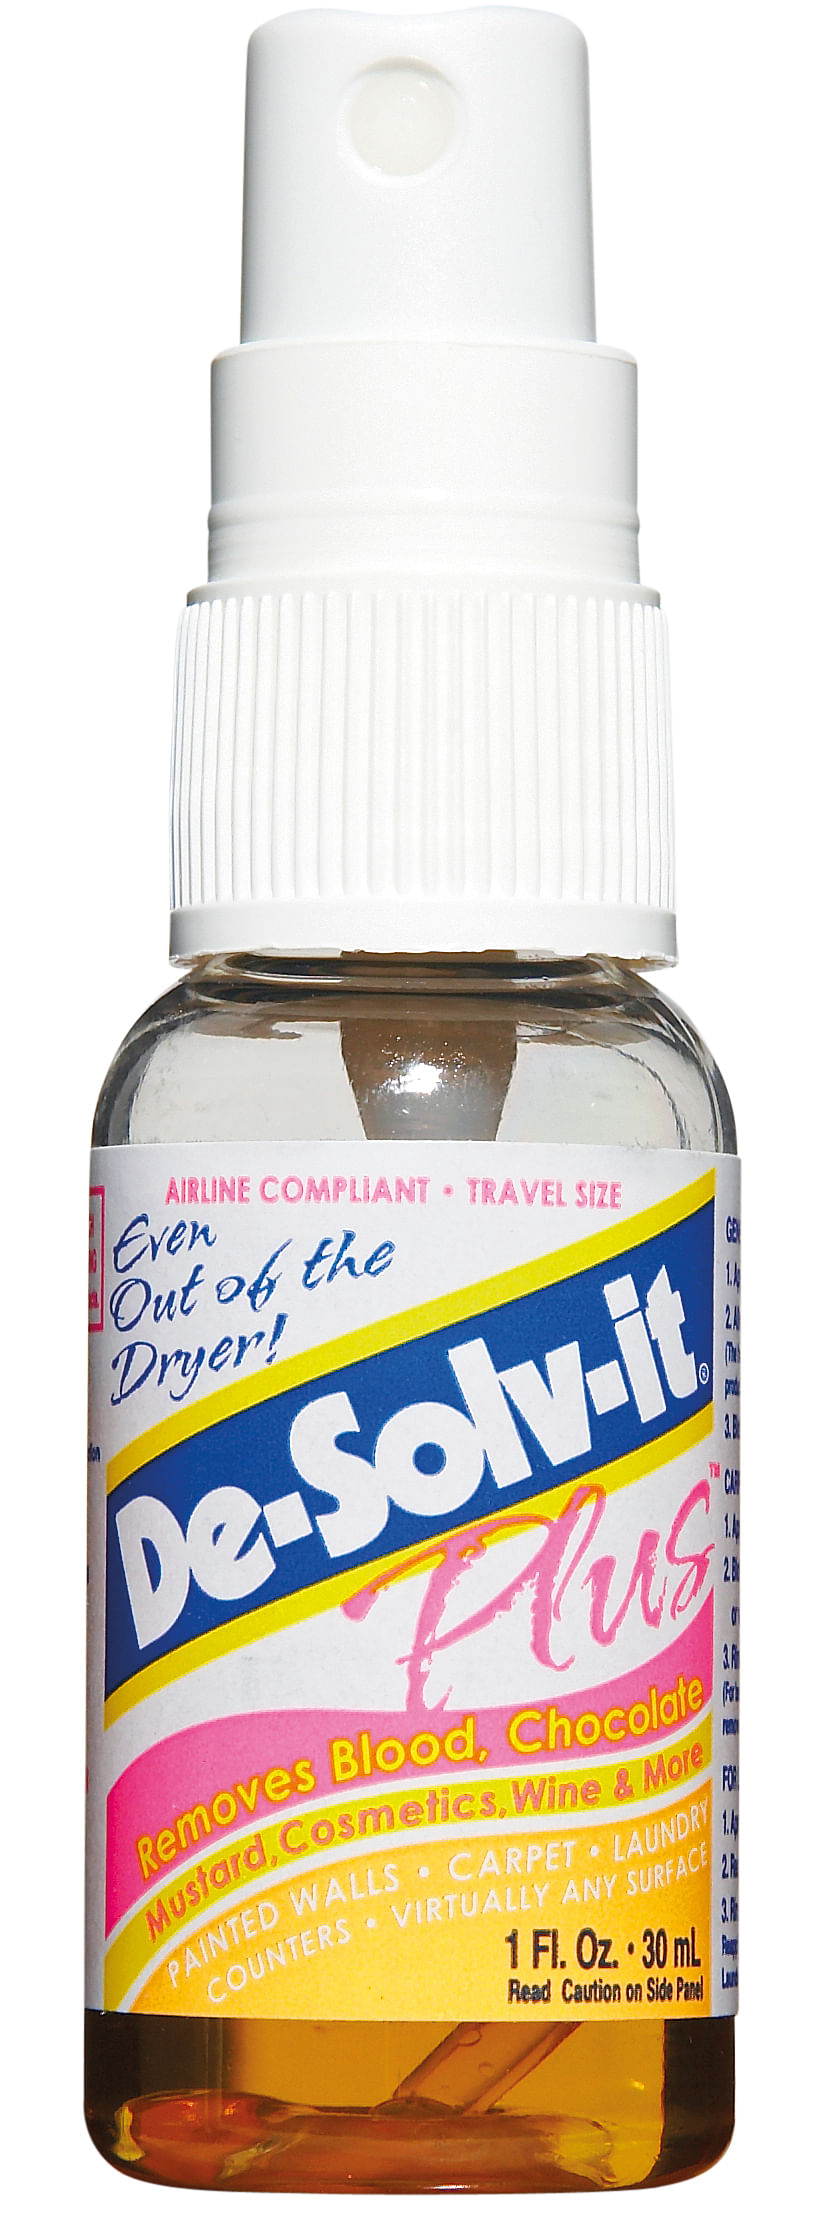 De-solv-it plus and stain test